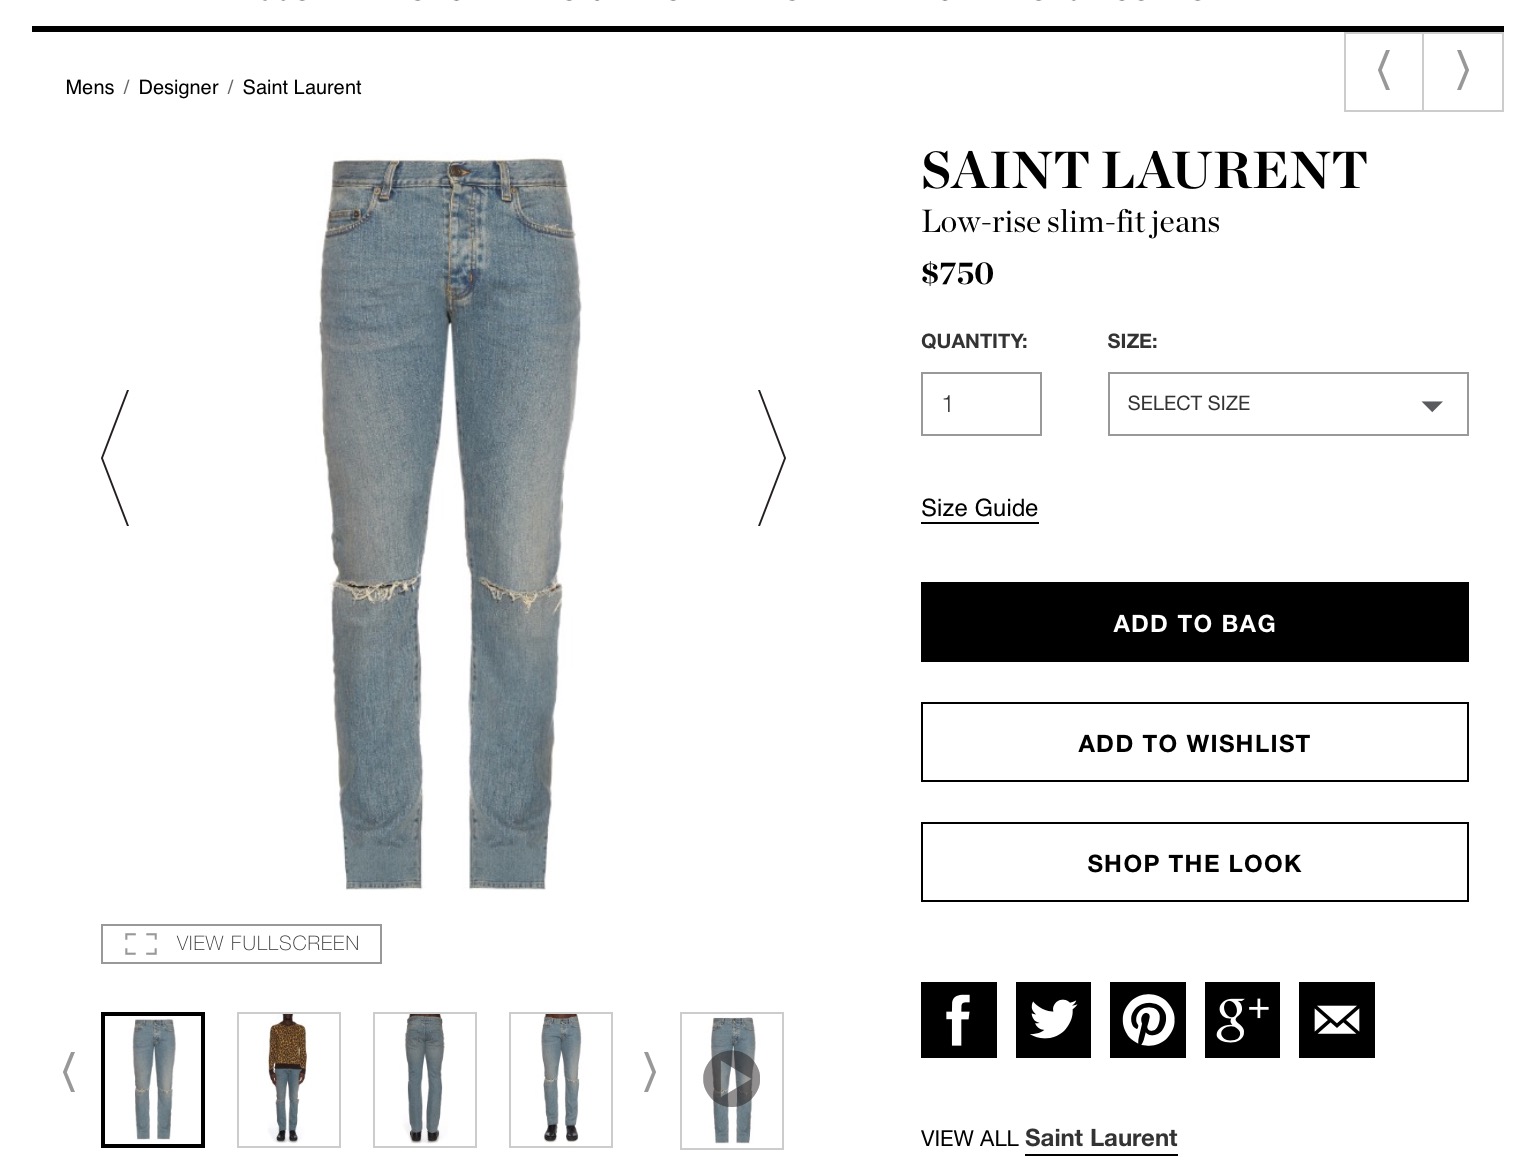 Saint Laurent Paris - Official Thread 